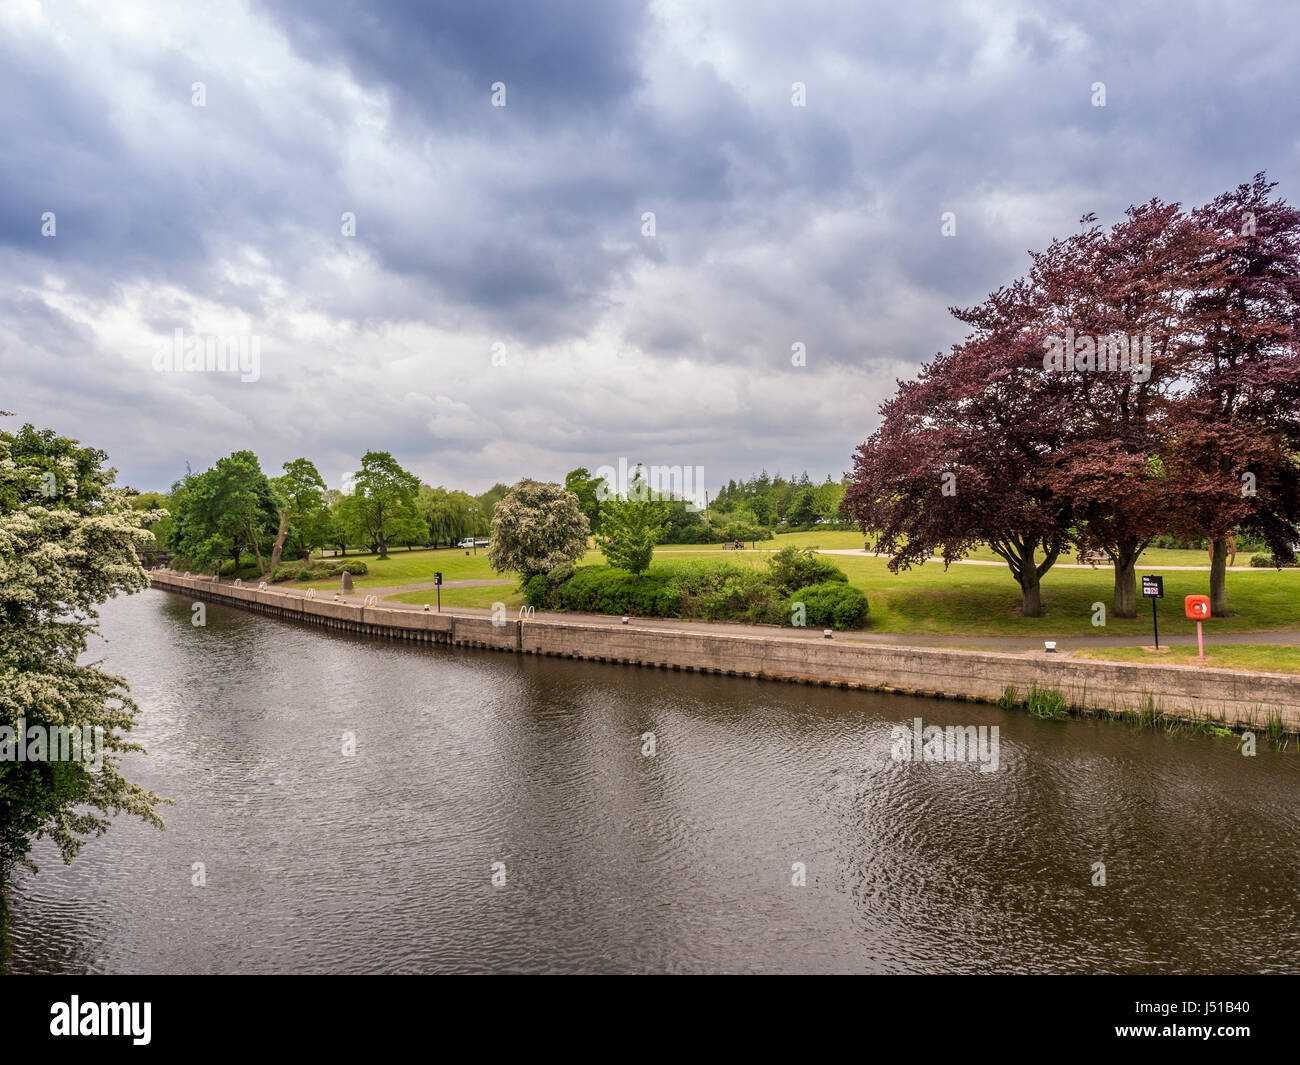 De Newark Riverside Park, situado a orillas del río Trent, enfrente del castillo de Newark, en el Reino Unido. Foto de stock